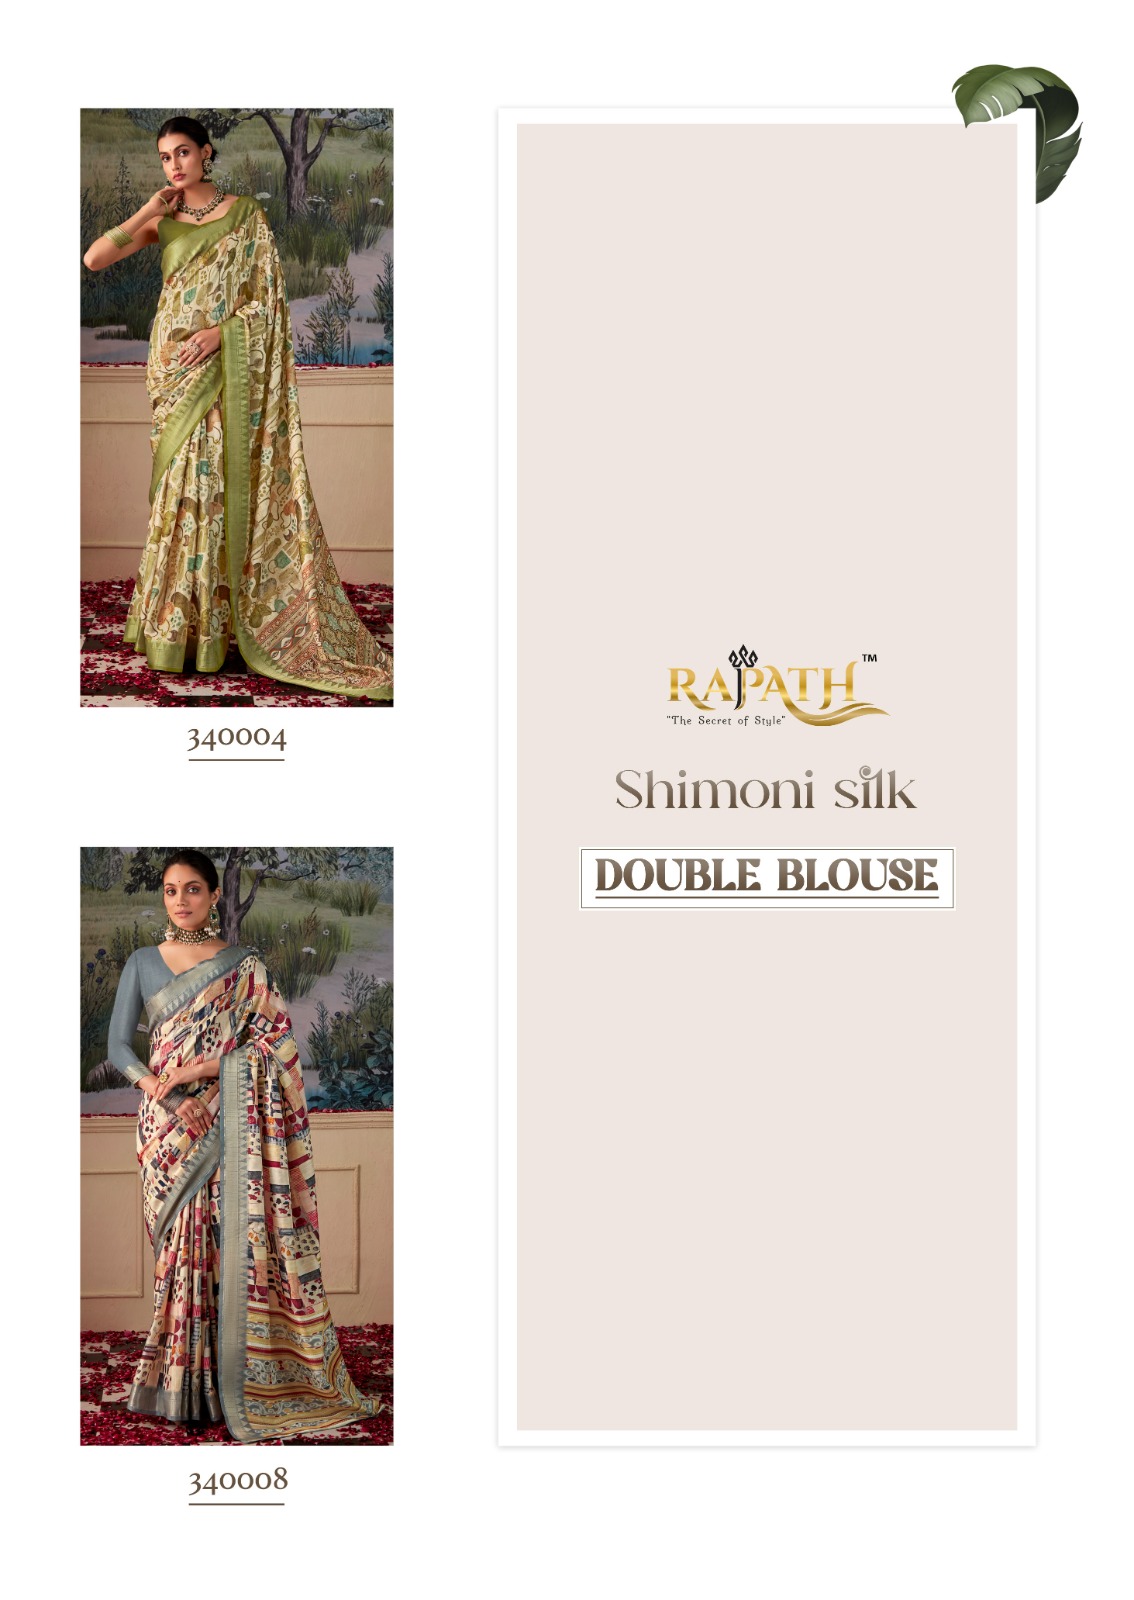 Rajpath Shimoni Silk collection 1